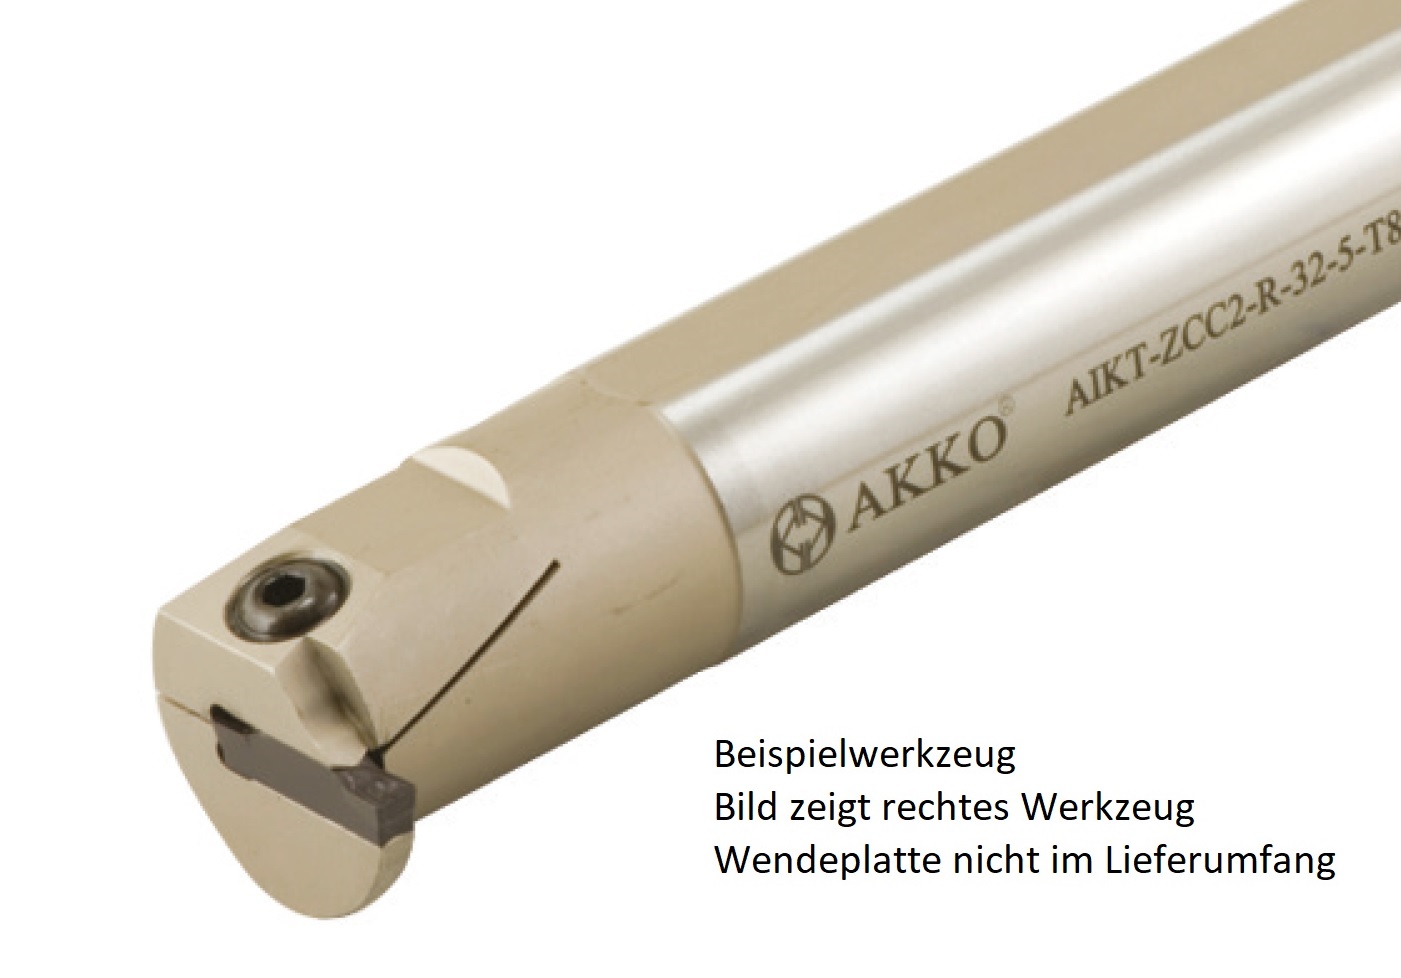 AKKO-Innen-Stechhalter, kompatibel mit ZCC-Stechplatte Z.GD-4
Schaft-ø 32, ohne Innenkühlung, rechts